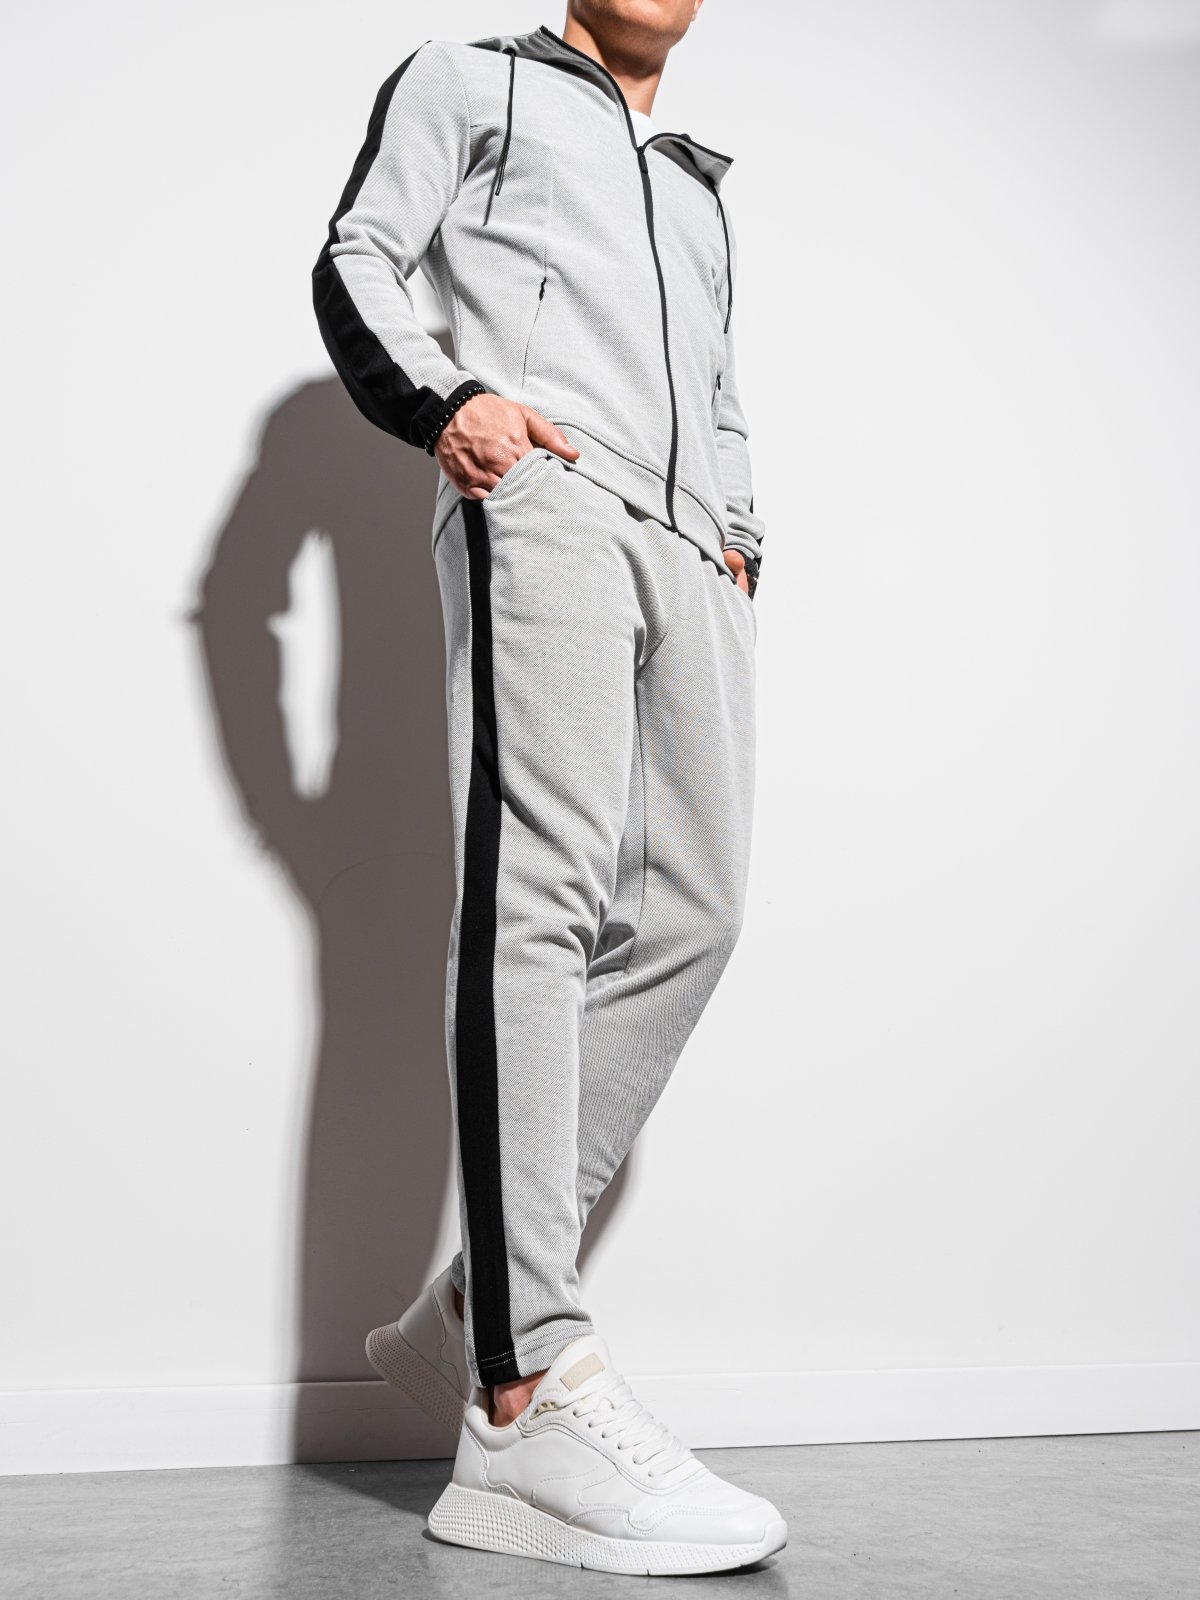 Men's sweatpants - light grey P949  MODONE wholesale - Clothing For Men